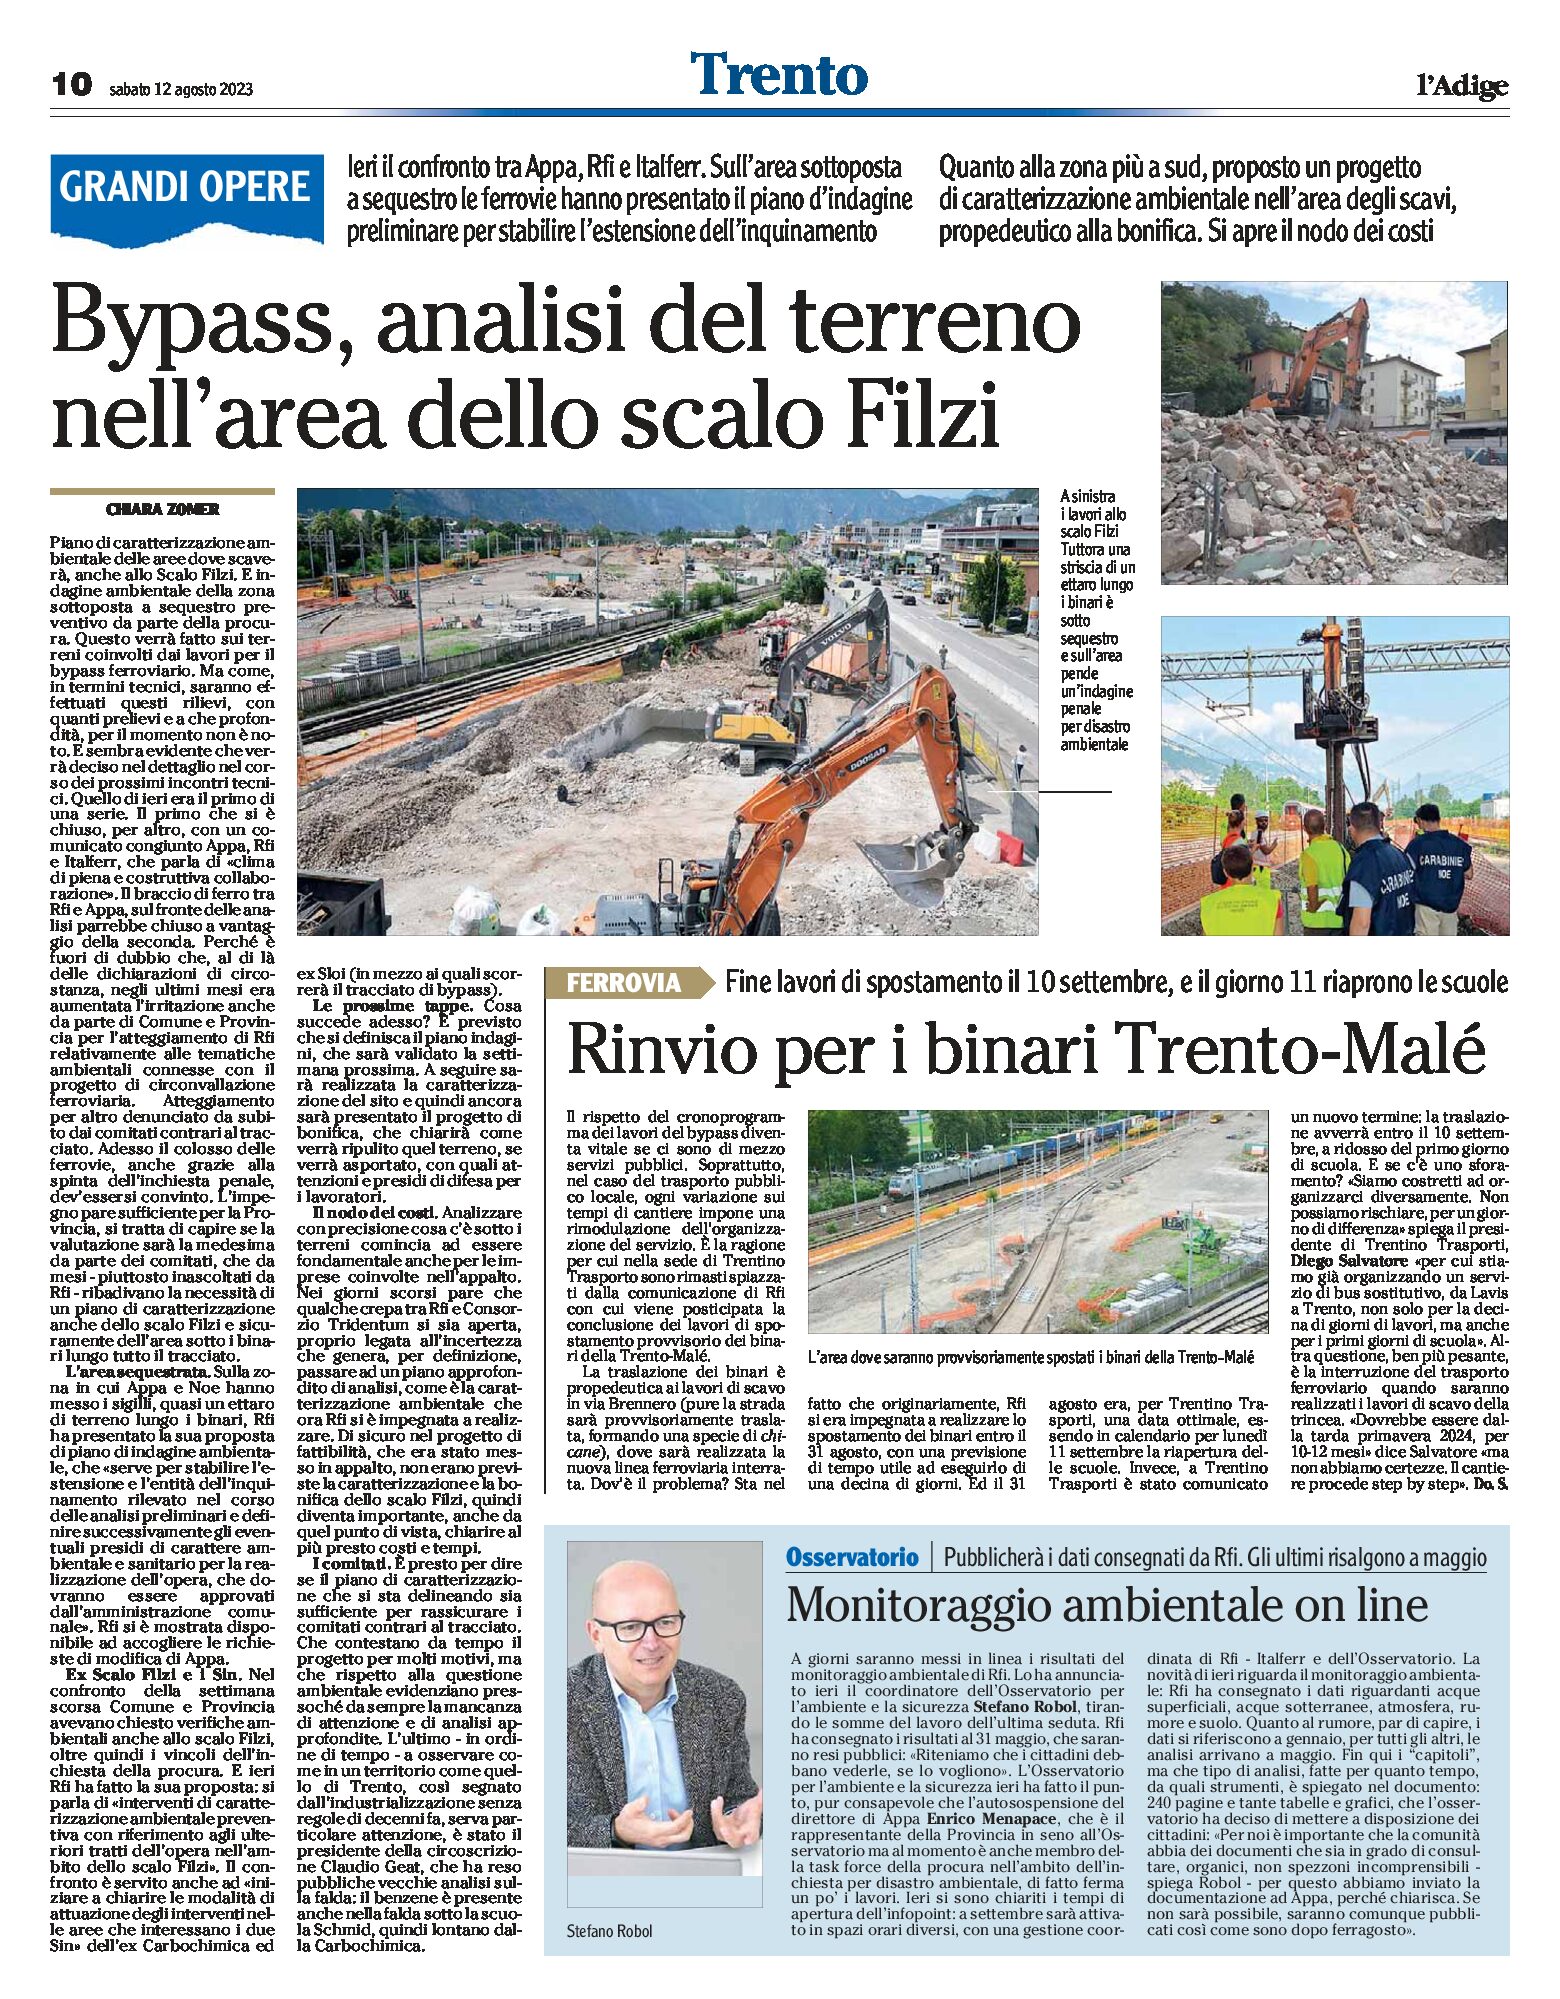 Trento, bypass: analisi del terreno nell’area dello scalo Filzi